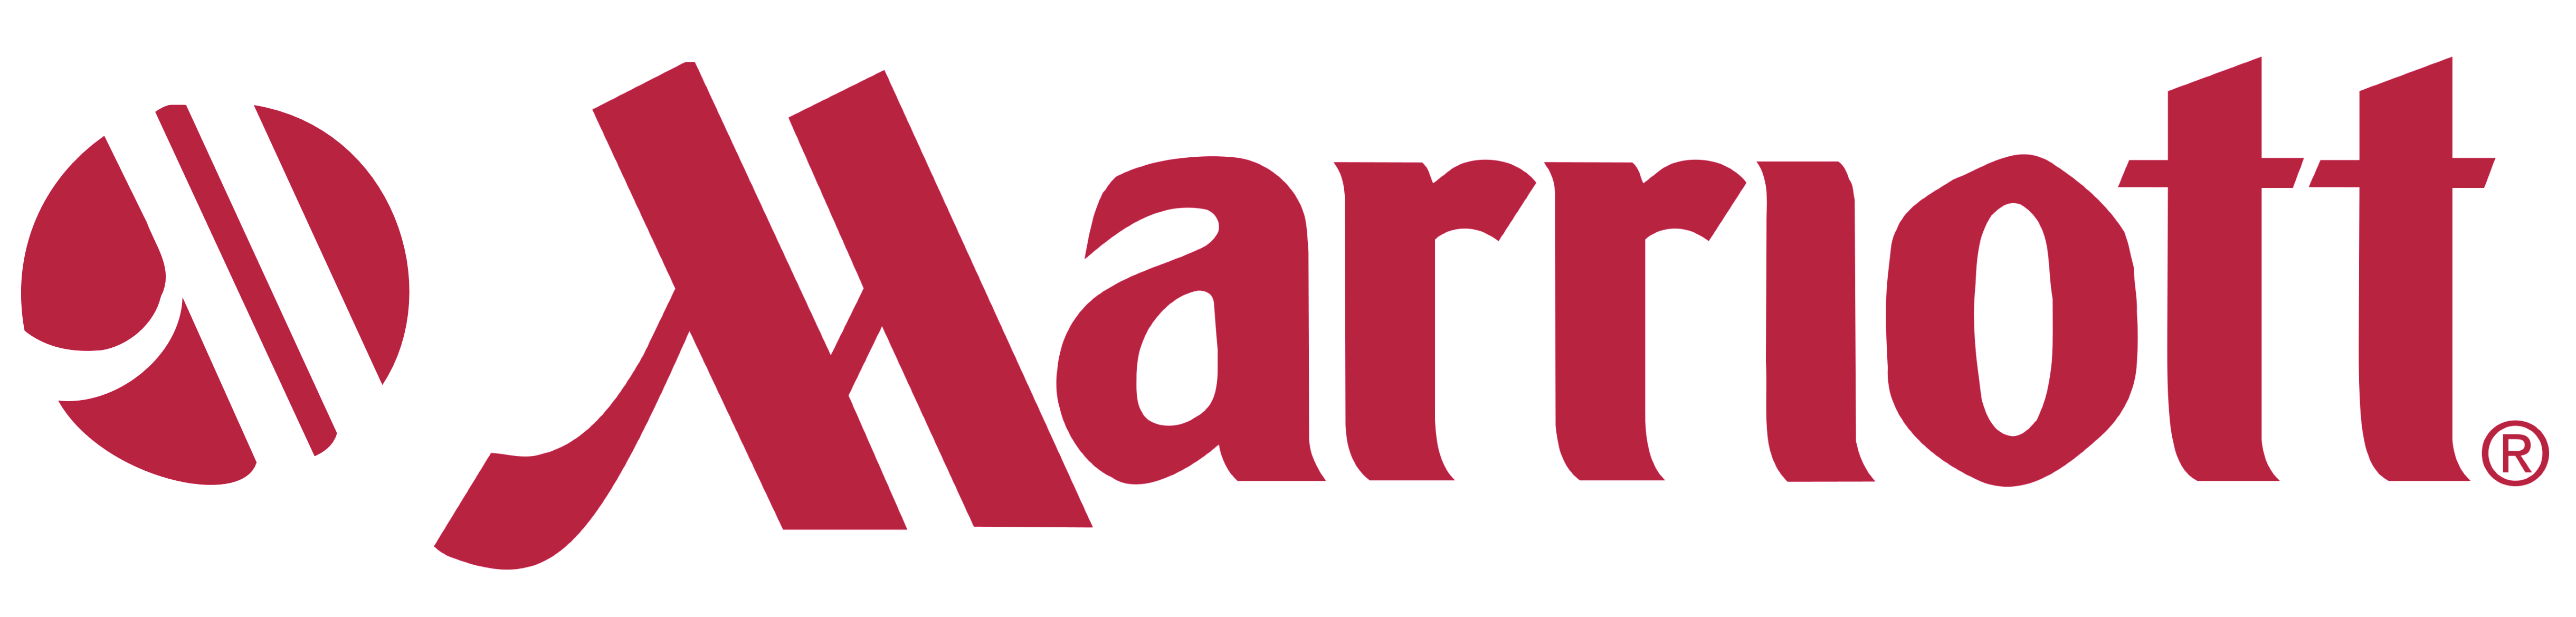 Marriott Logos Download